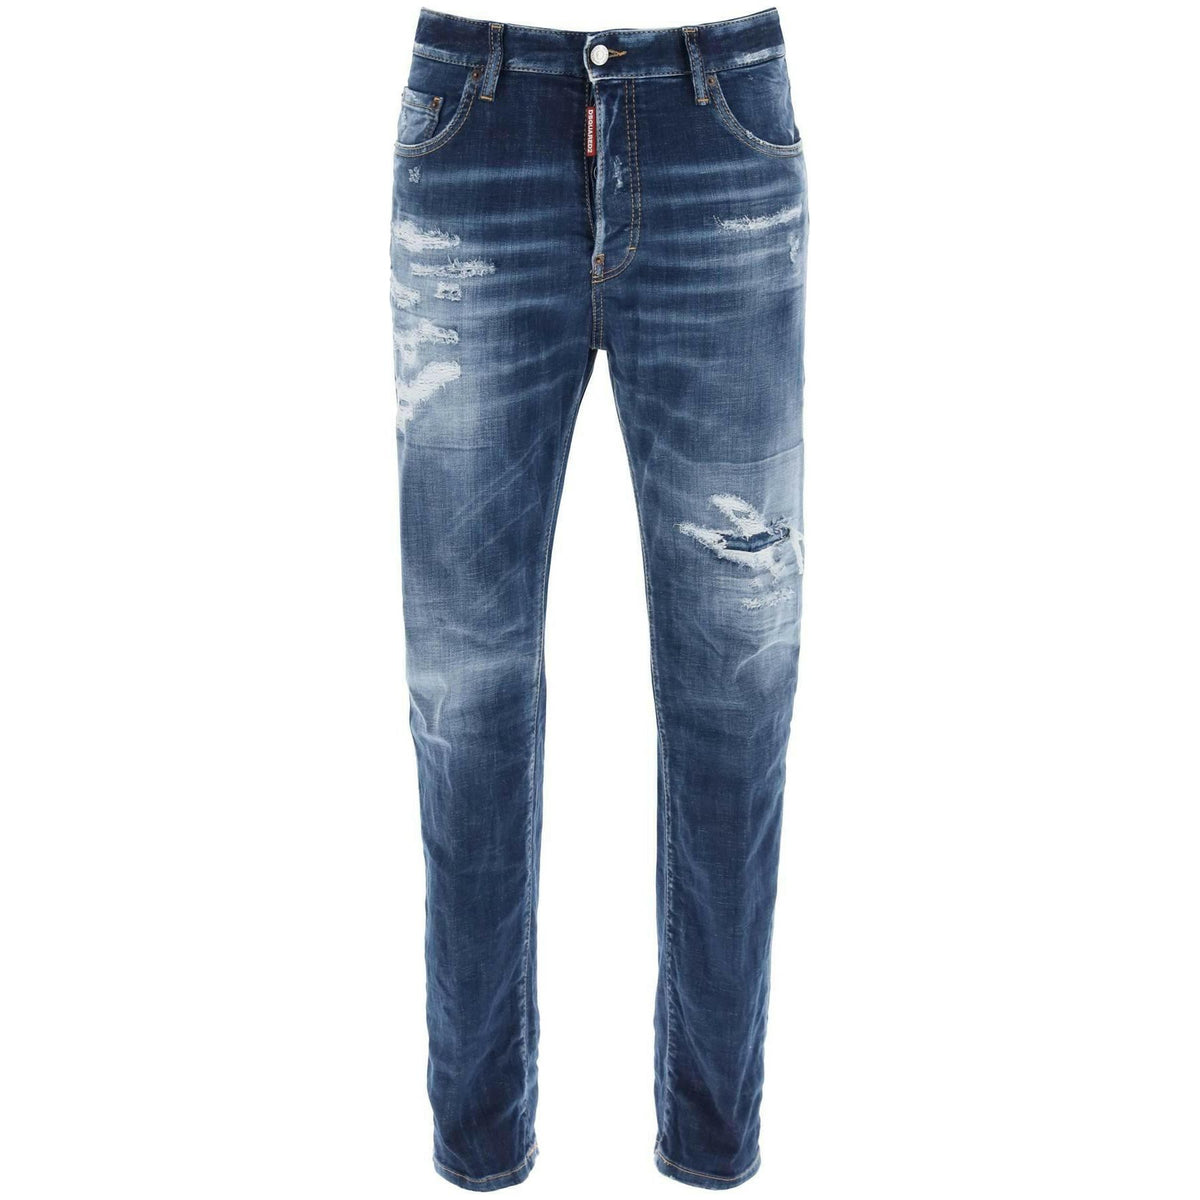 DSQUARED2 - 642 Jeans In Denim Destroyed Wash - JOHN JULIA